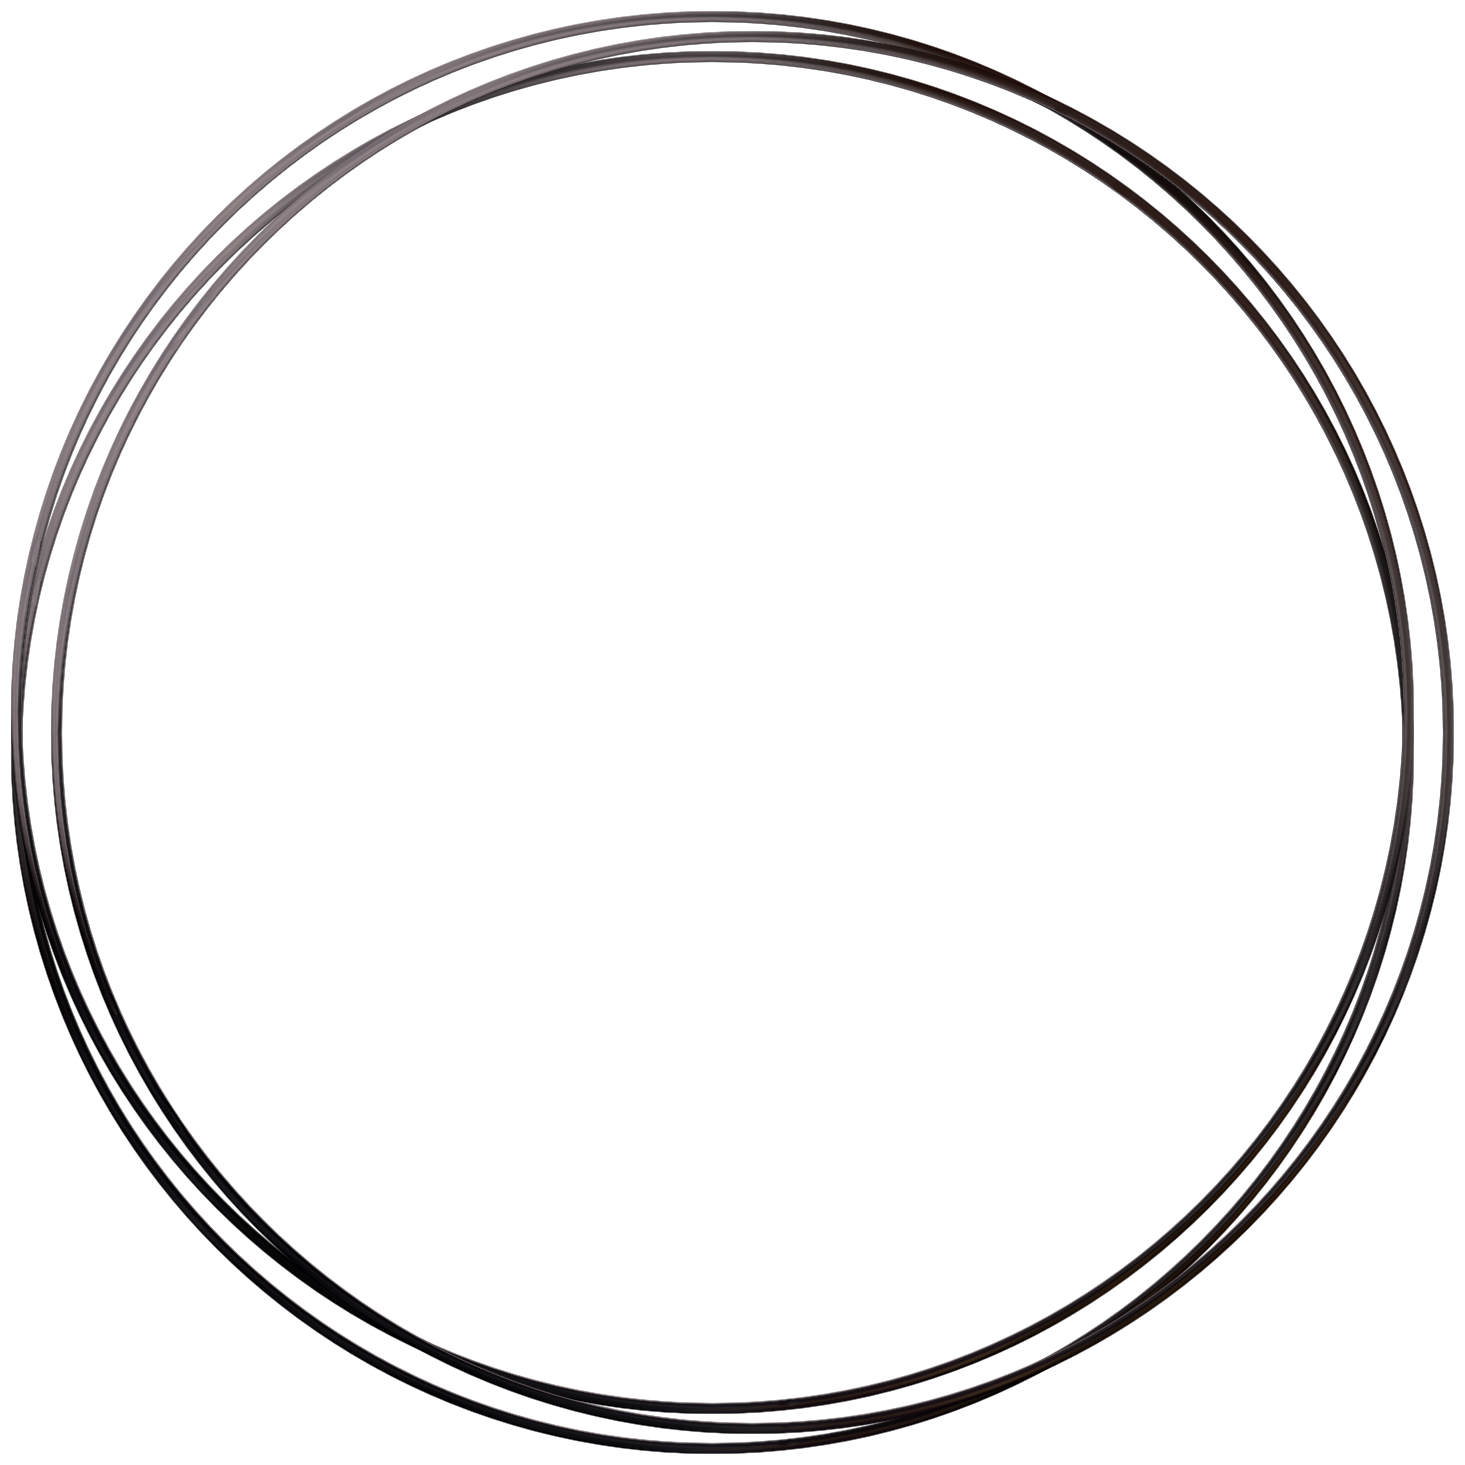 Immagine Trasparente della cornice del cerchio